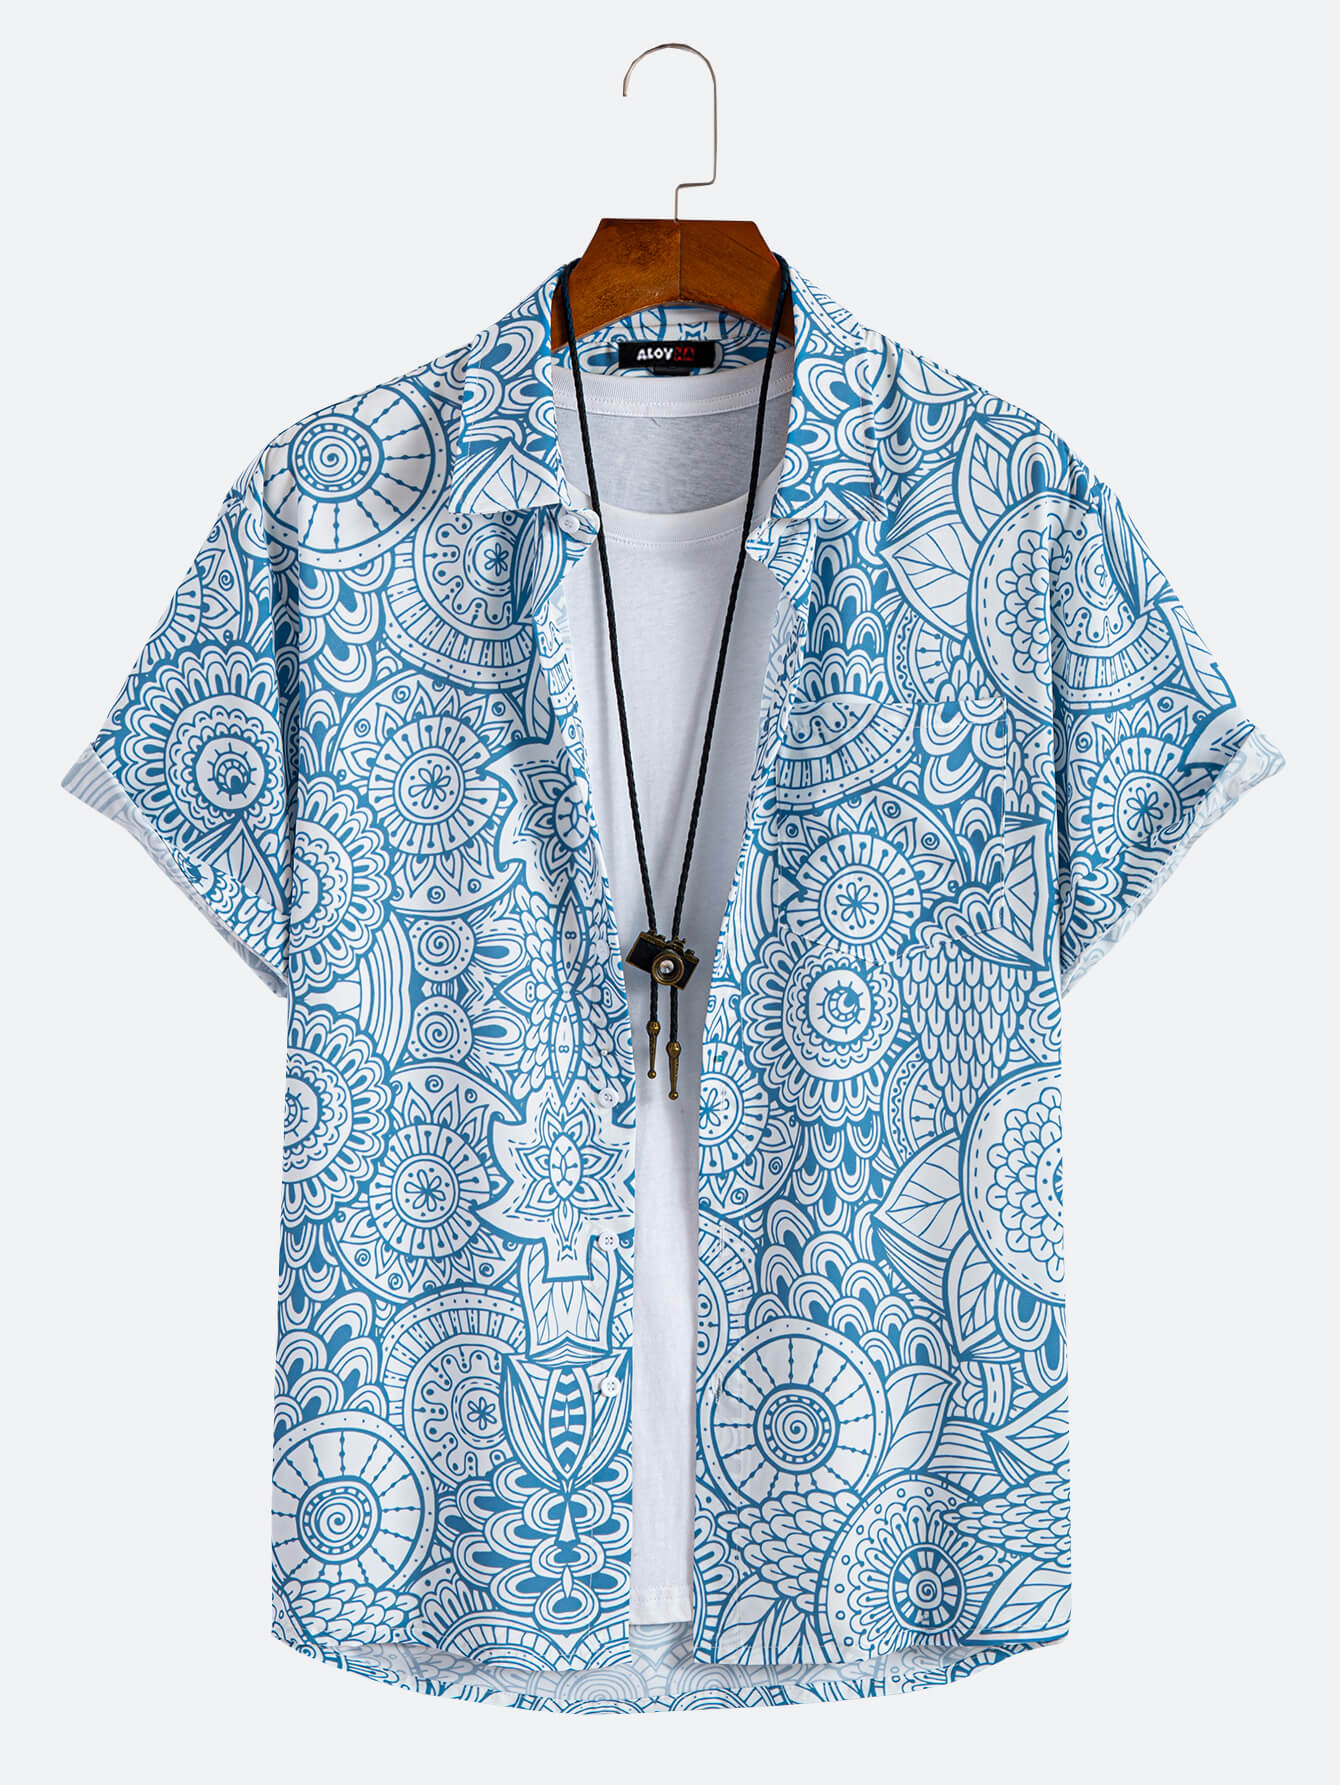 Men's Hawaiian Shirt Blue Graffiti Print Button Up Shirt